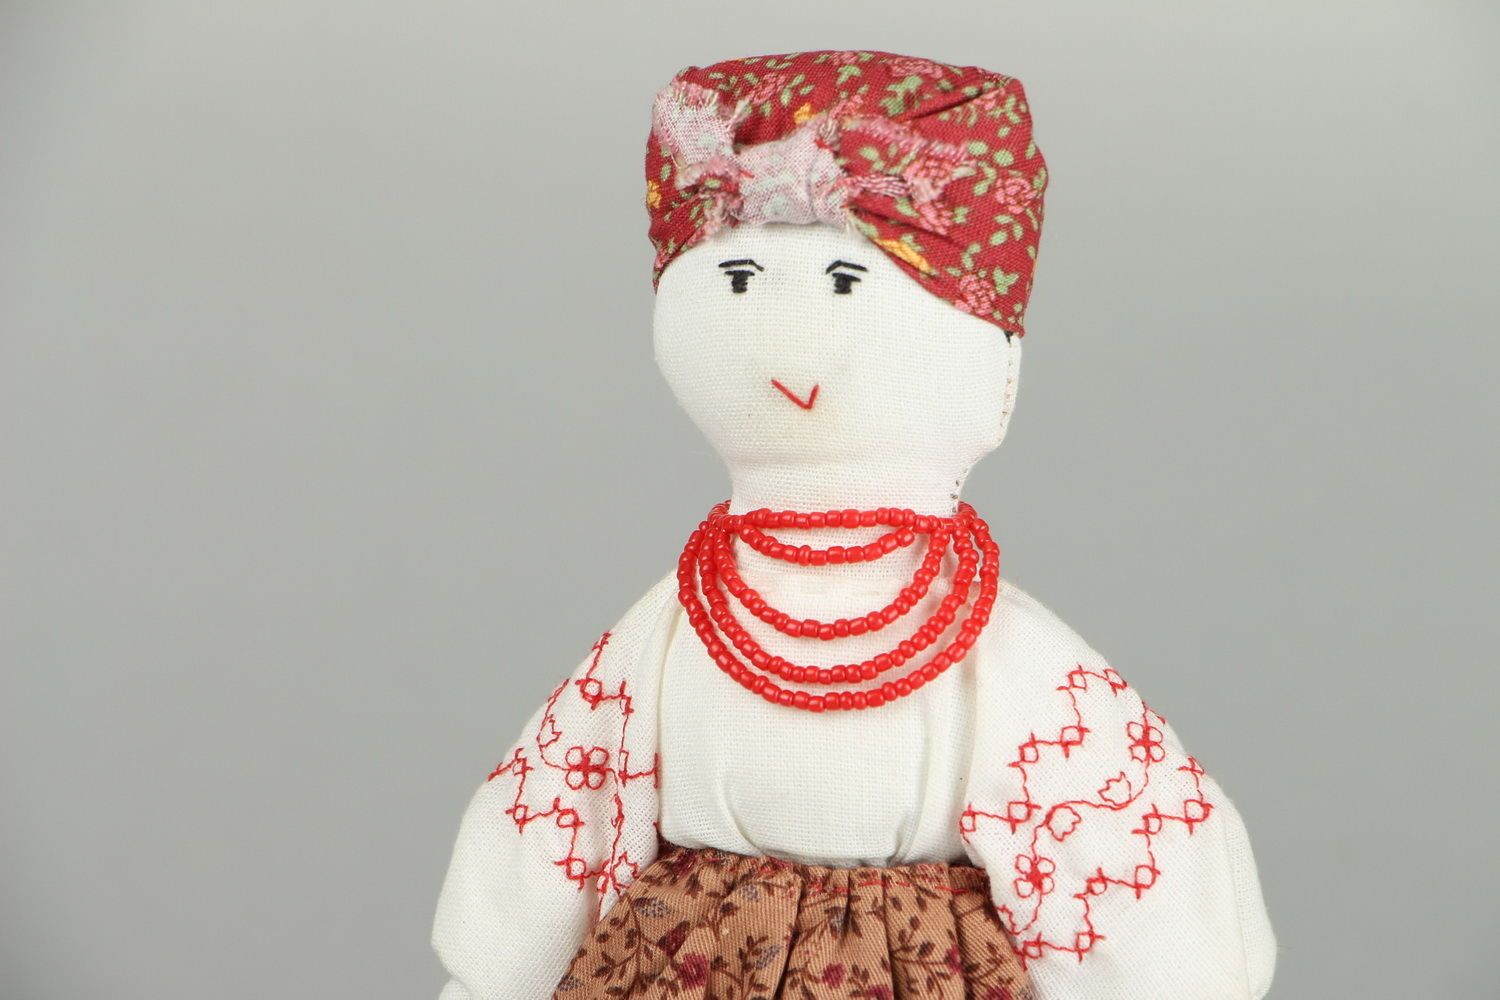 Primitive doll in folk costume photo 3